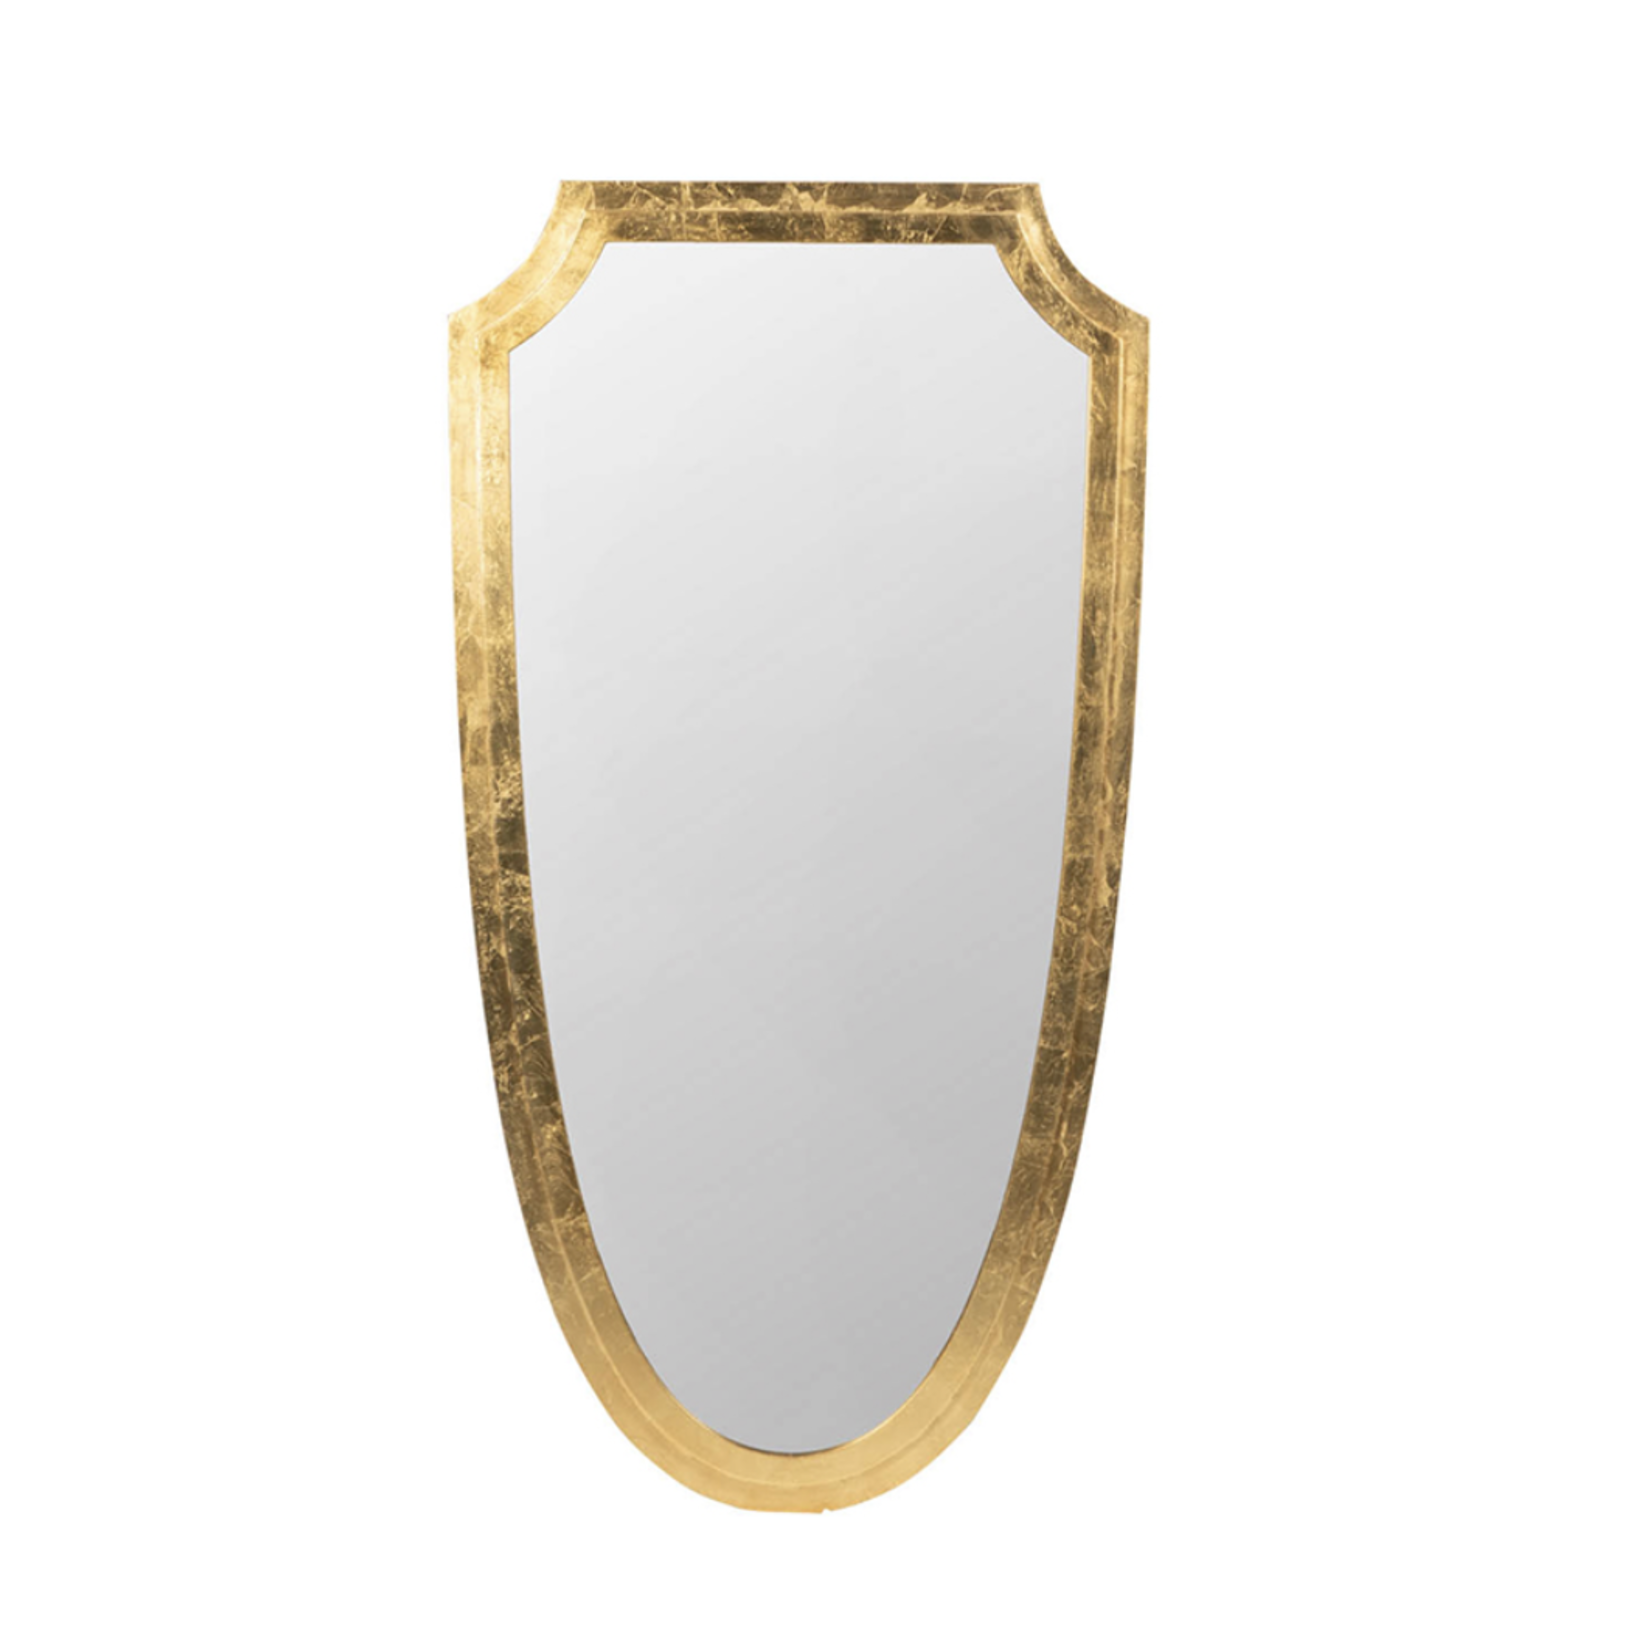 Crest Mirror